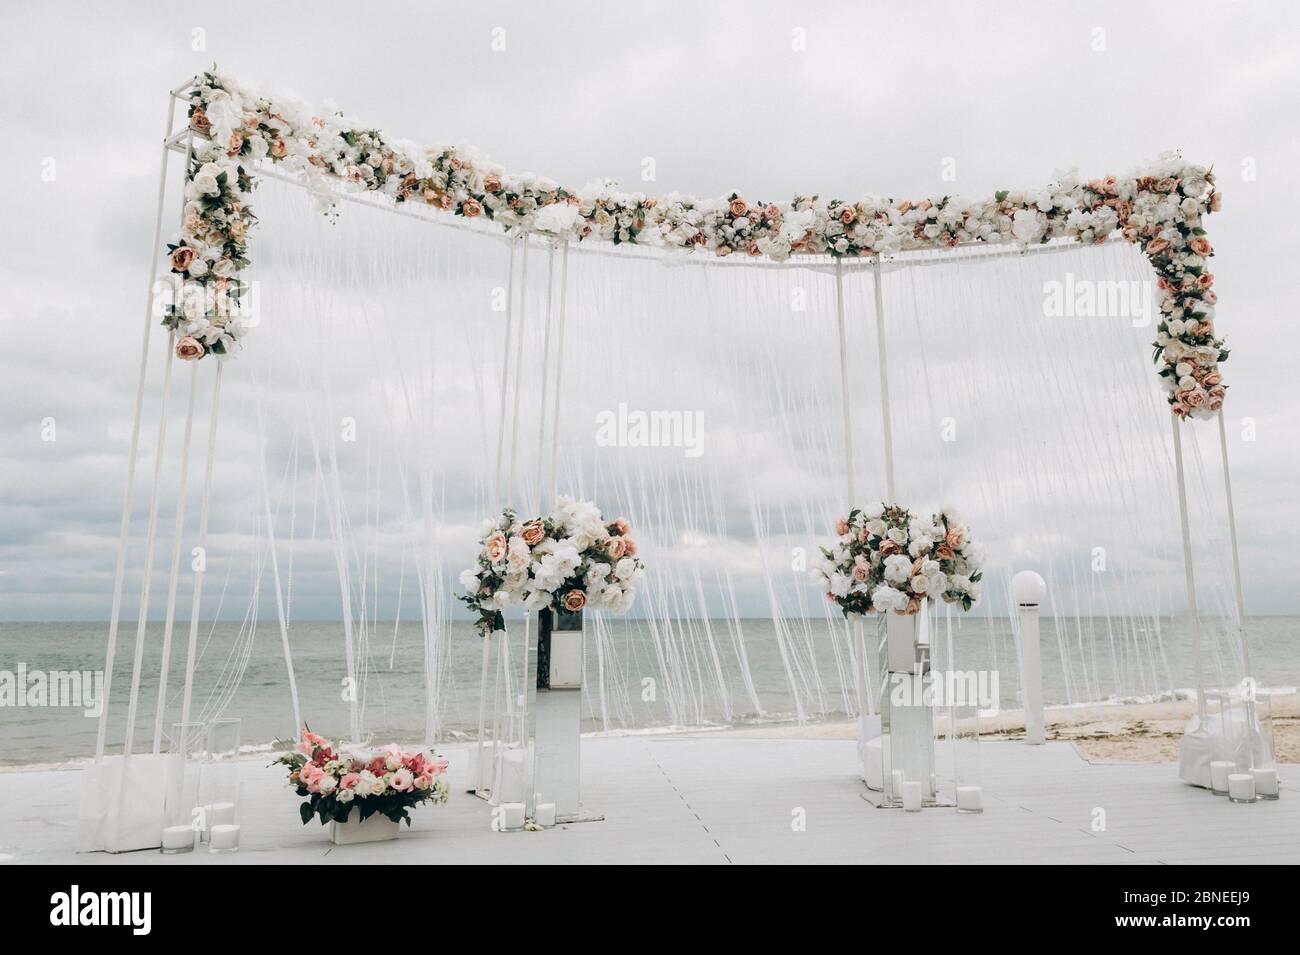 Wunderschöne Hochzeitsfeier. Bereich der Hochzeitszeremonie. Rundbogen, mit Blumen, Grün dekoriert Stockfoto